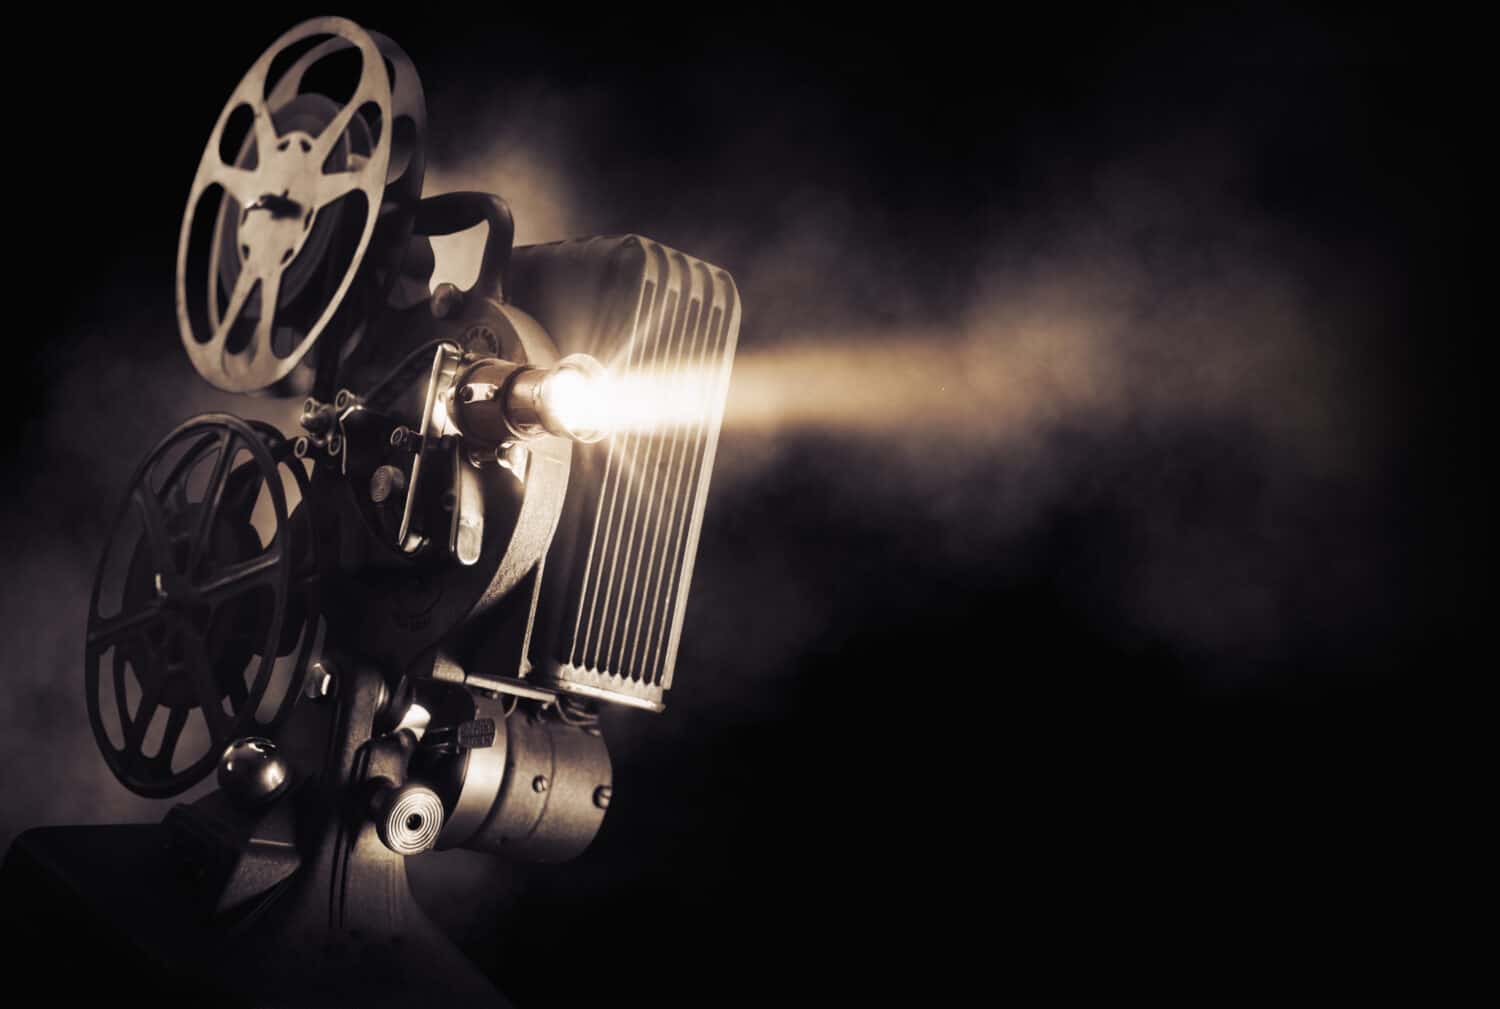 Proiettore cinematografico su sfondo scuro con fascio di luce/immagine ad alto contrasto